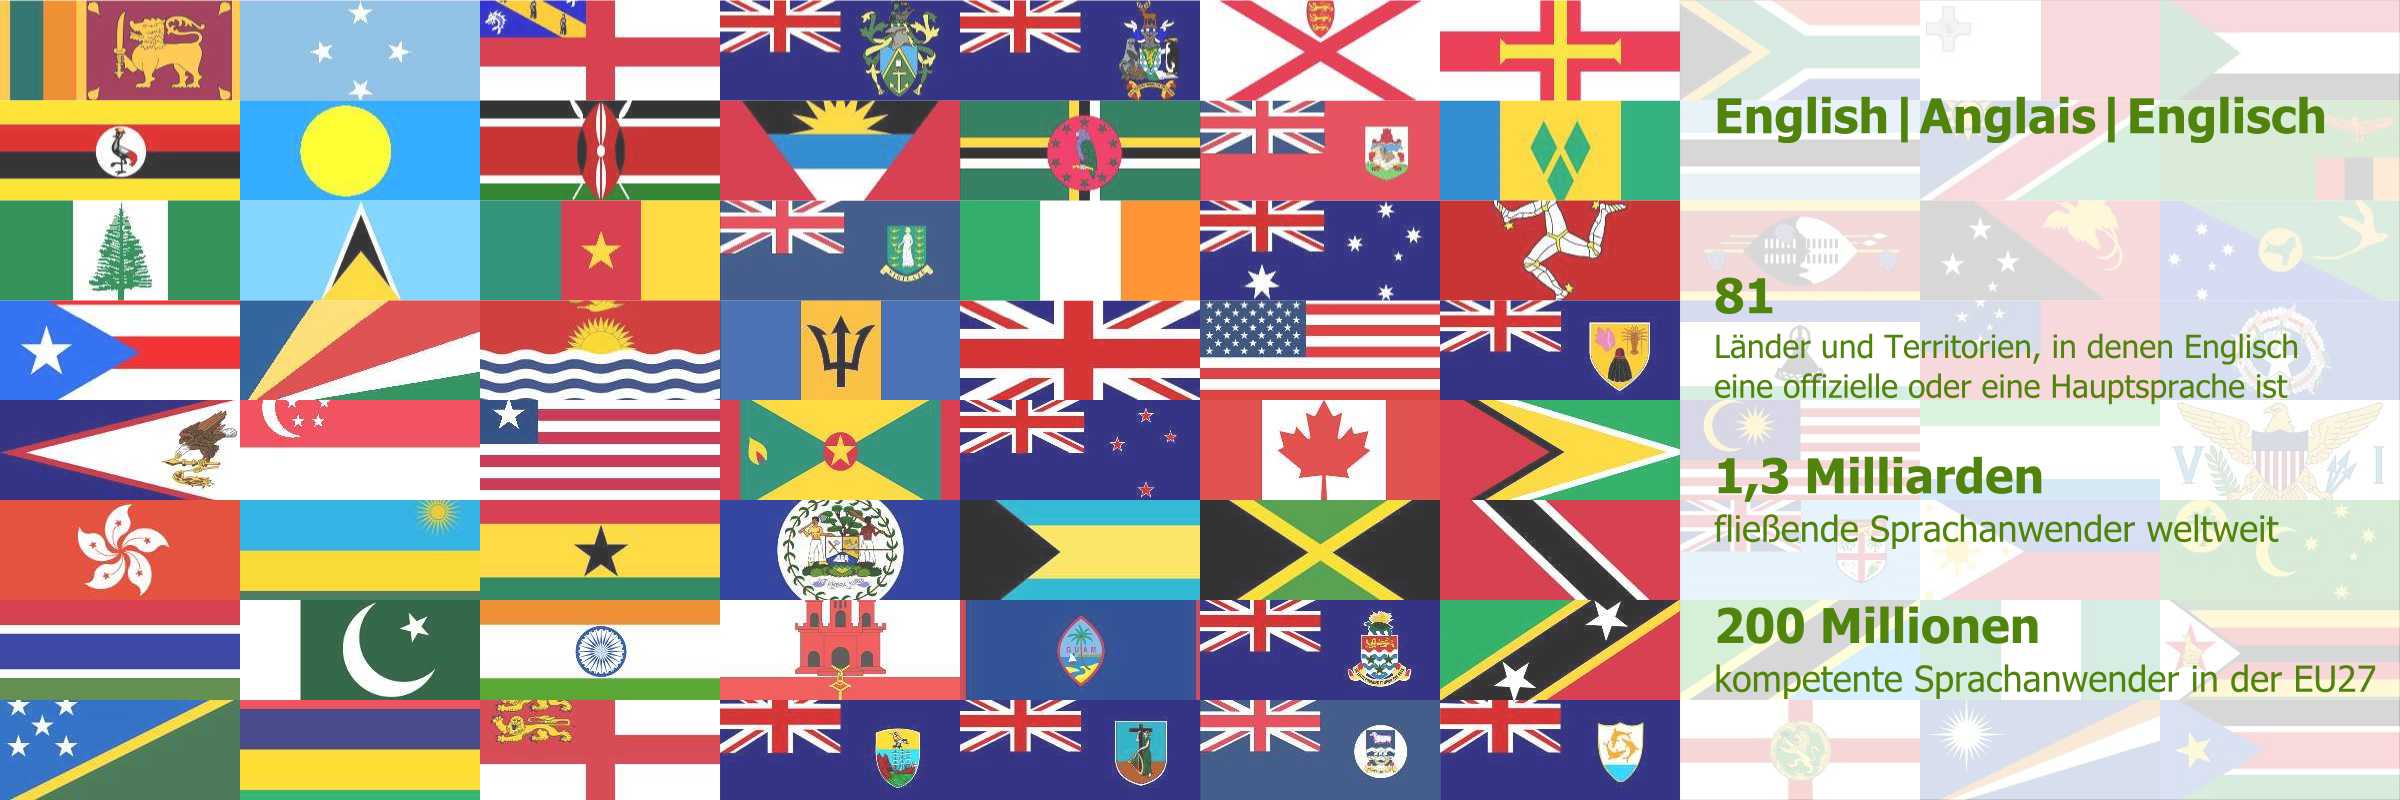 Flaggen der englischsprachigen Länder